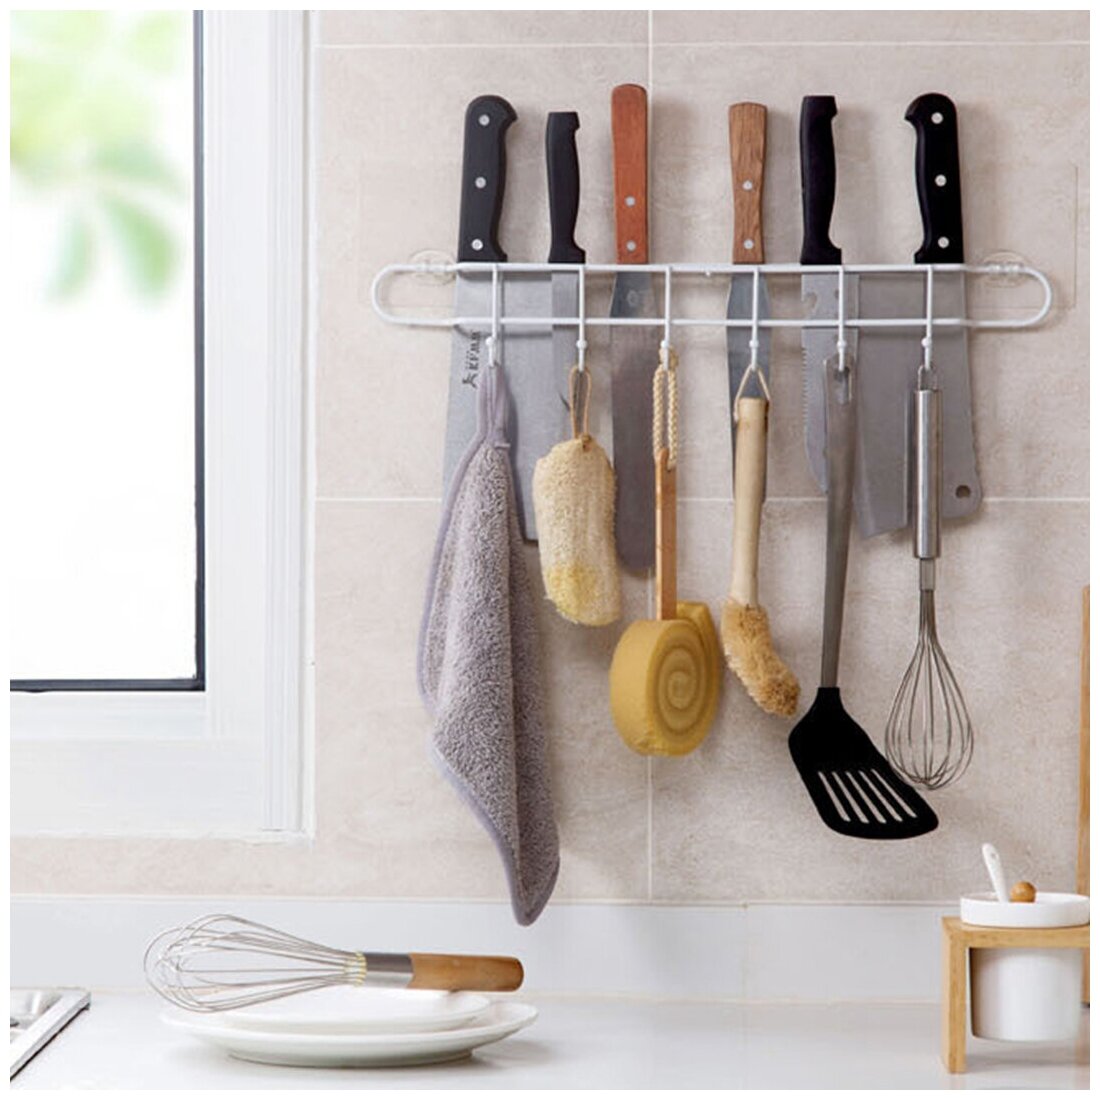 Органайзер для кухни / крючки для кухни / держатель кухонный / подставка для ножей/Рейлинг для кухни